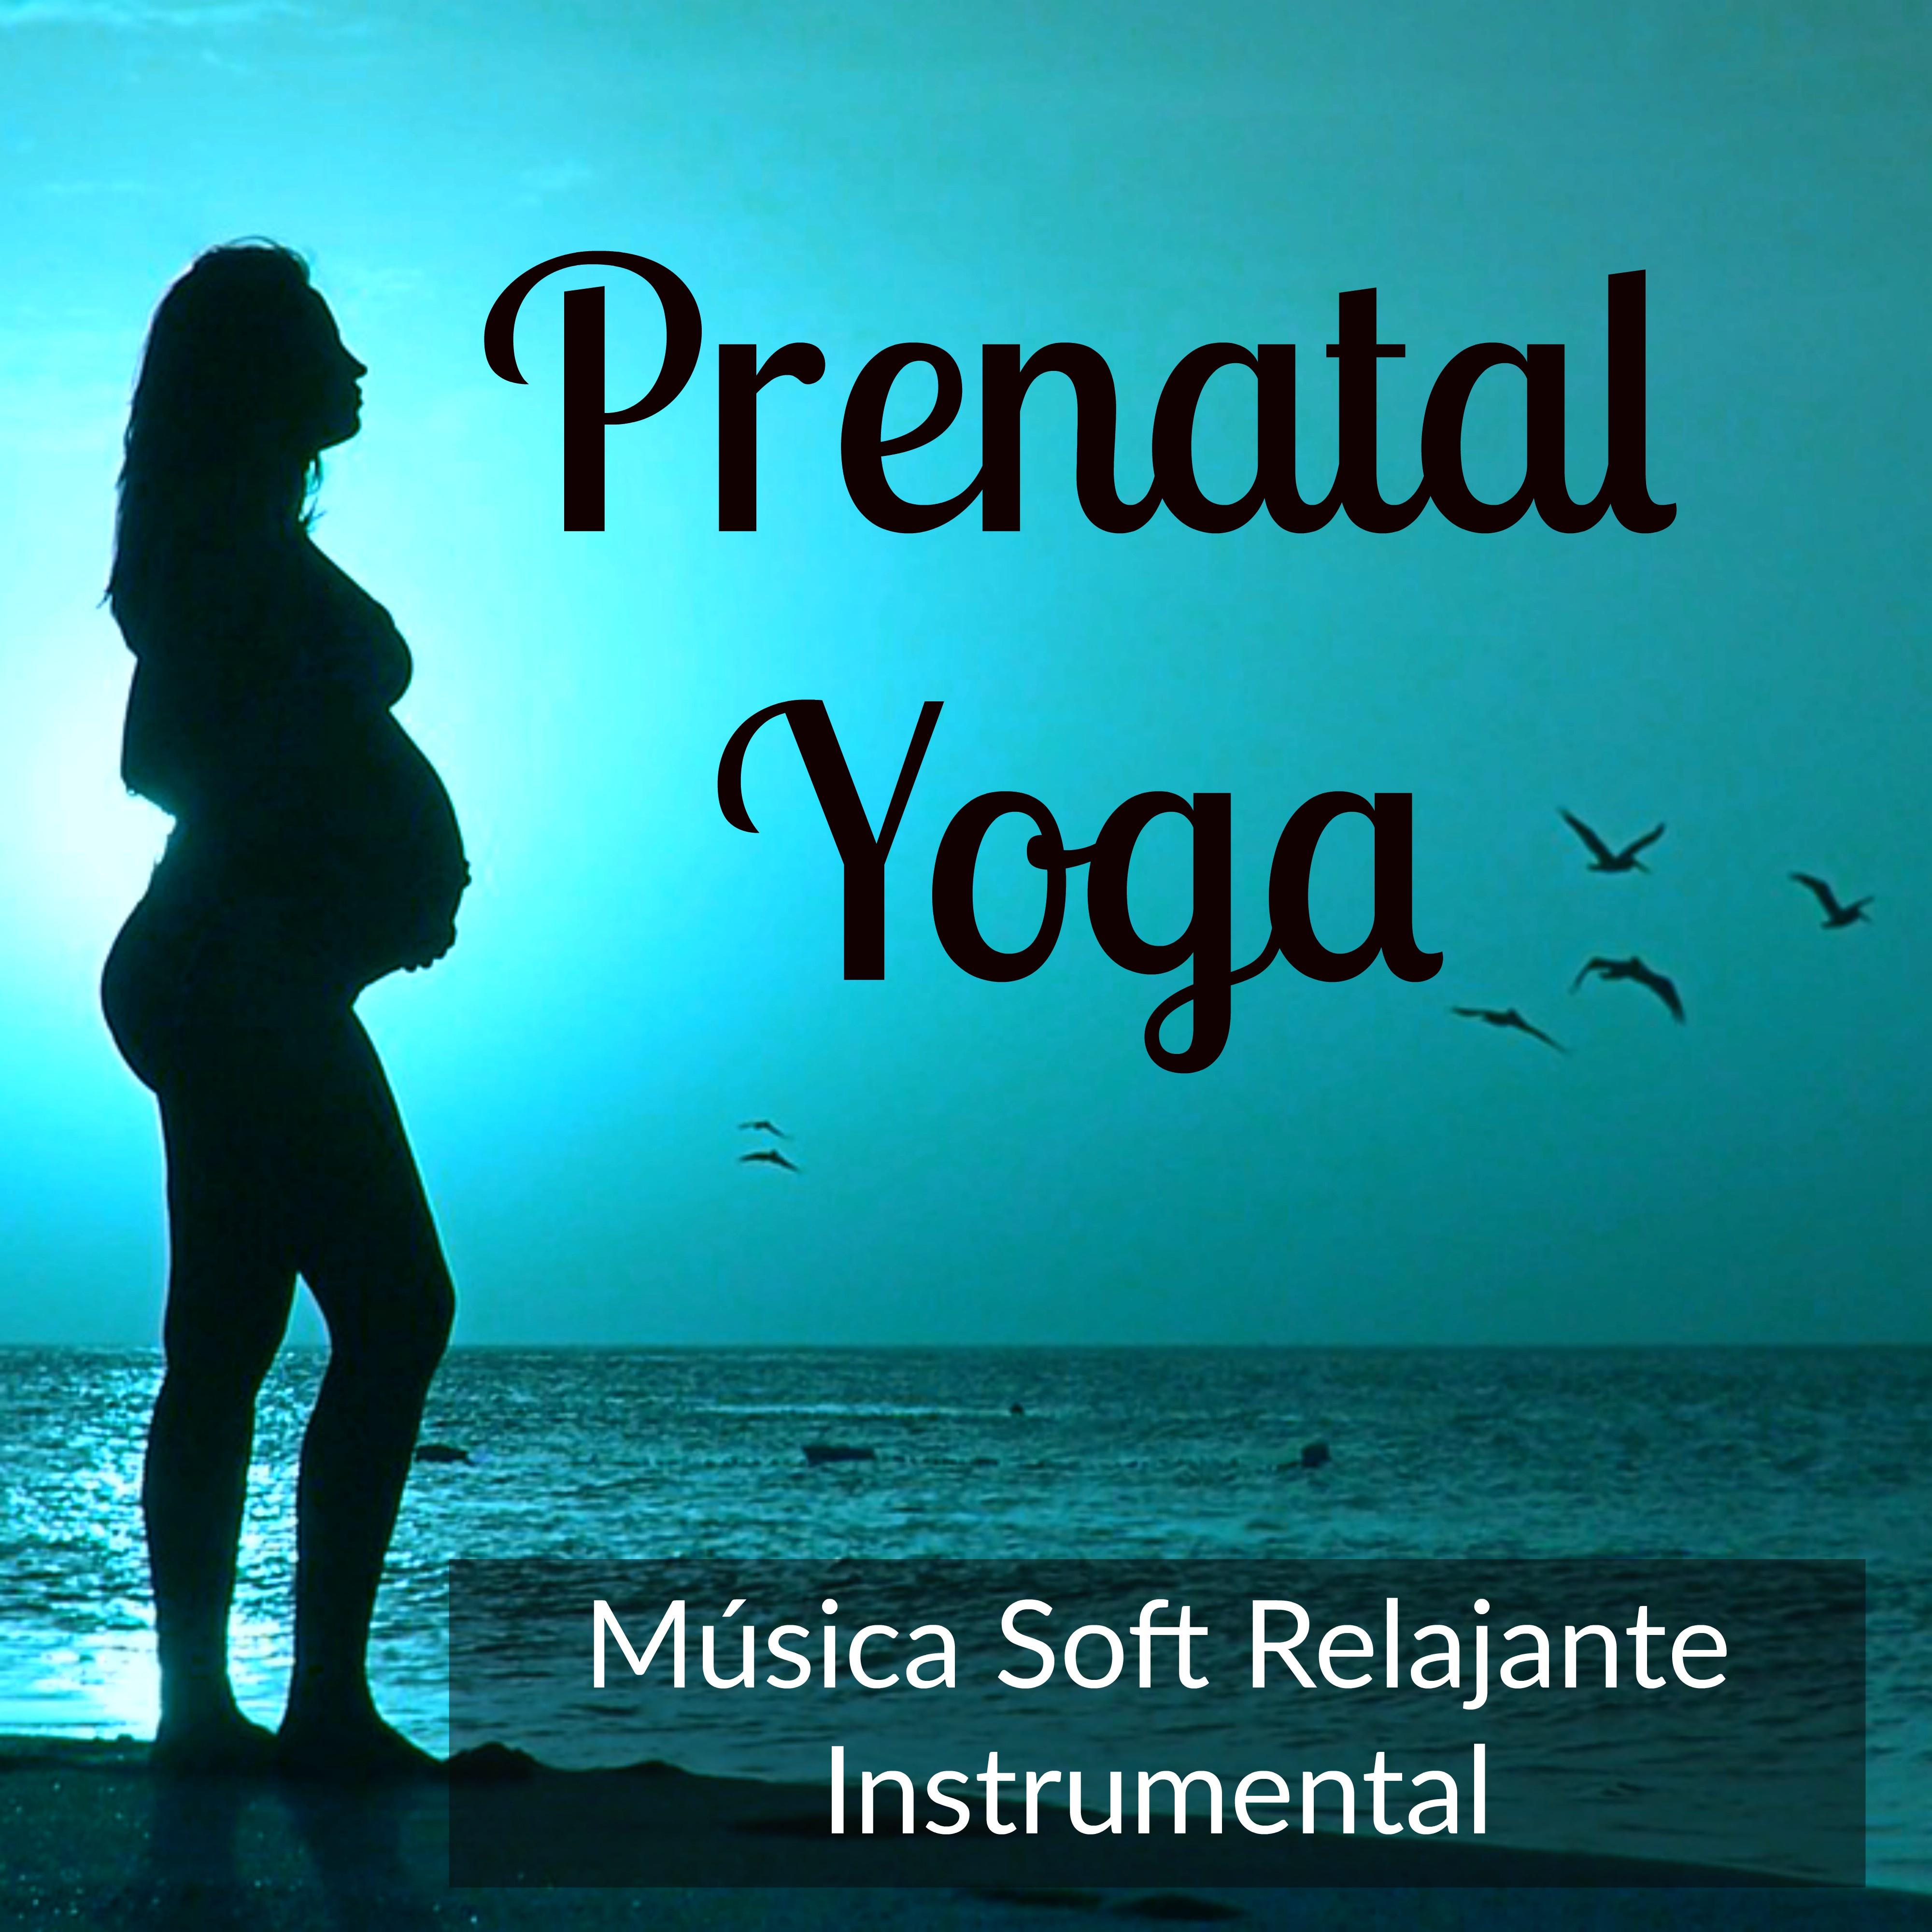 Prenatal Yoga - Música Soft Relajante Instrumental para Dulce Canción de Cuna Bienestar Clases de Meditación con Sonidos de la Naturaleza Binaurales New Age